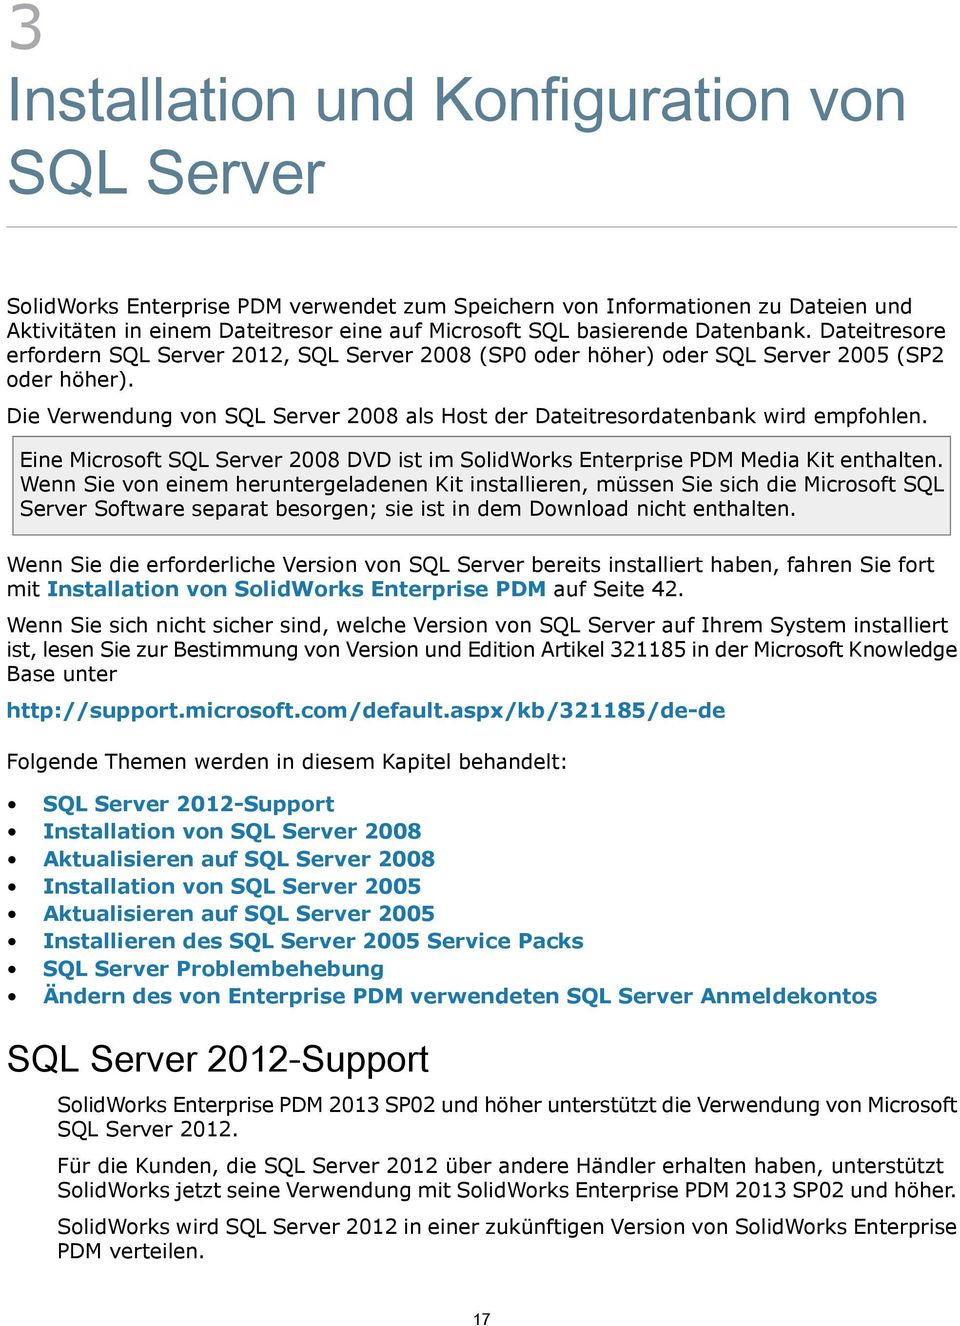 Die Verwendung von SQL Server 2008 als Host der Dateitresordatenbank wird empfohlen. Eine Microsoft SQL Server 2008 DVD ist im SolidWorks Enterprise PDM Media Kit enthalten.